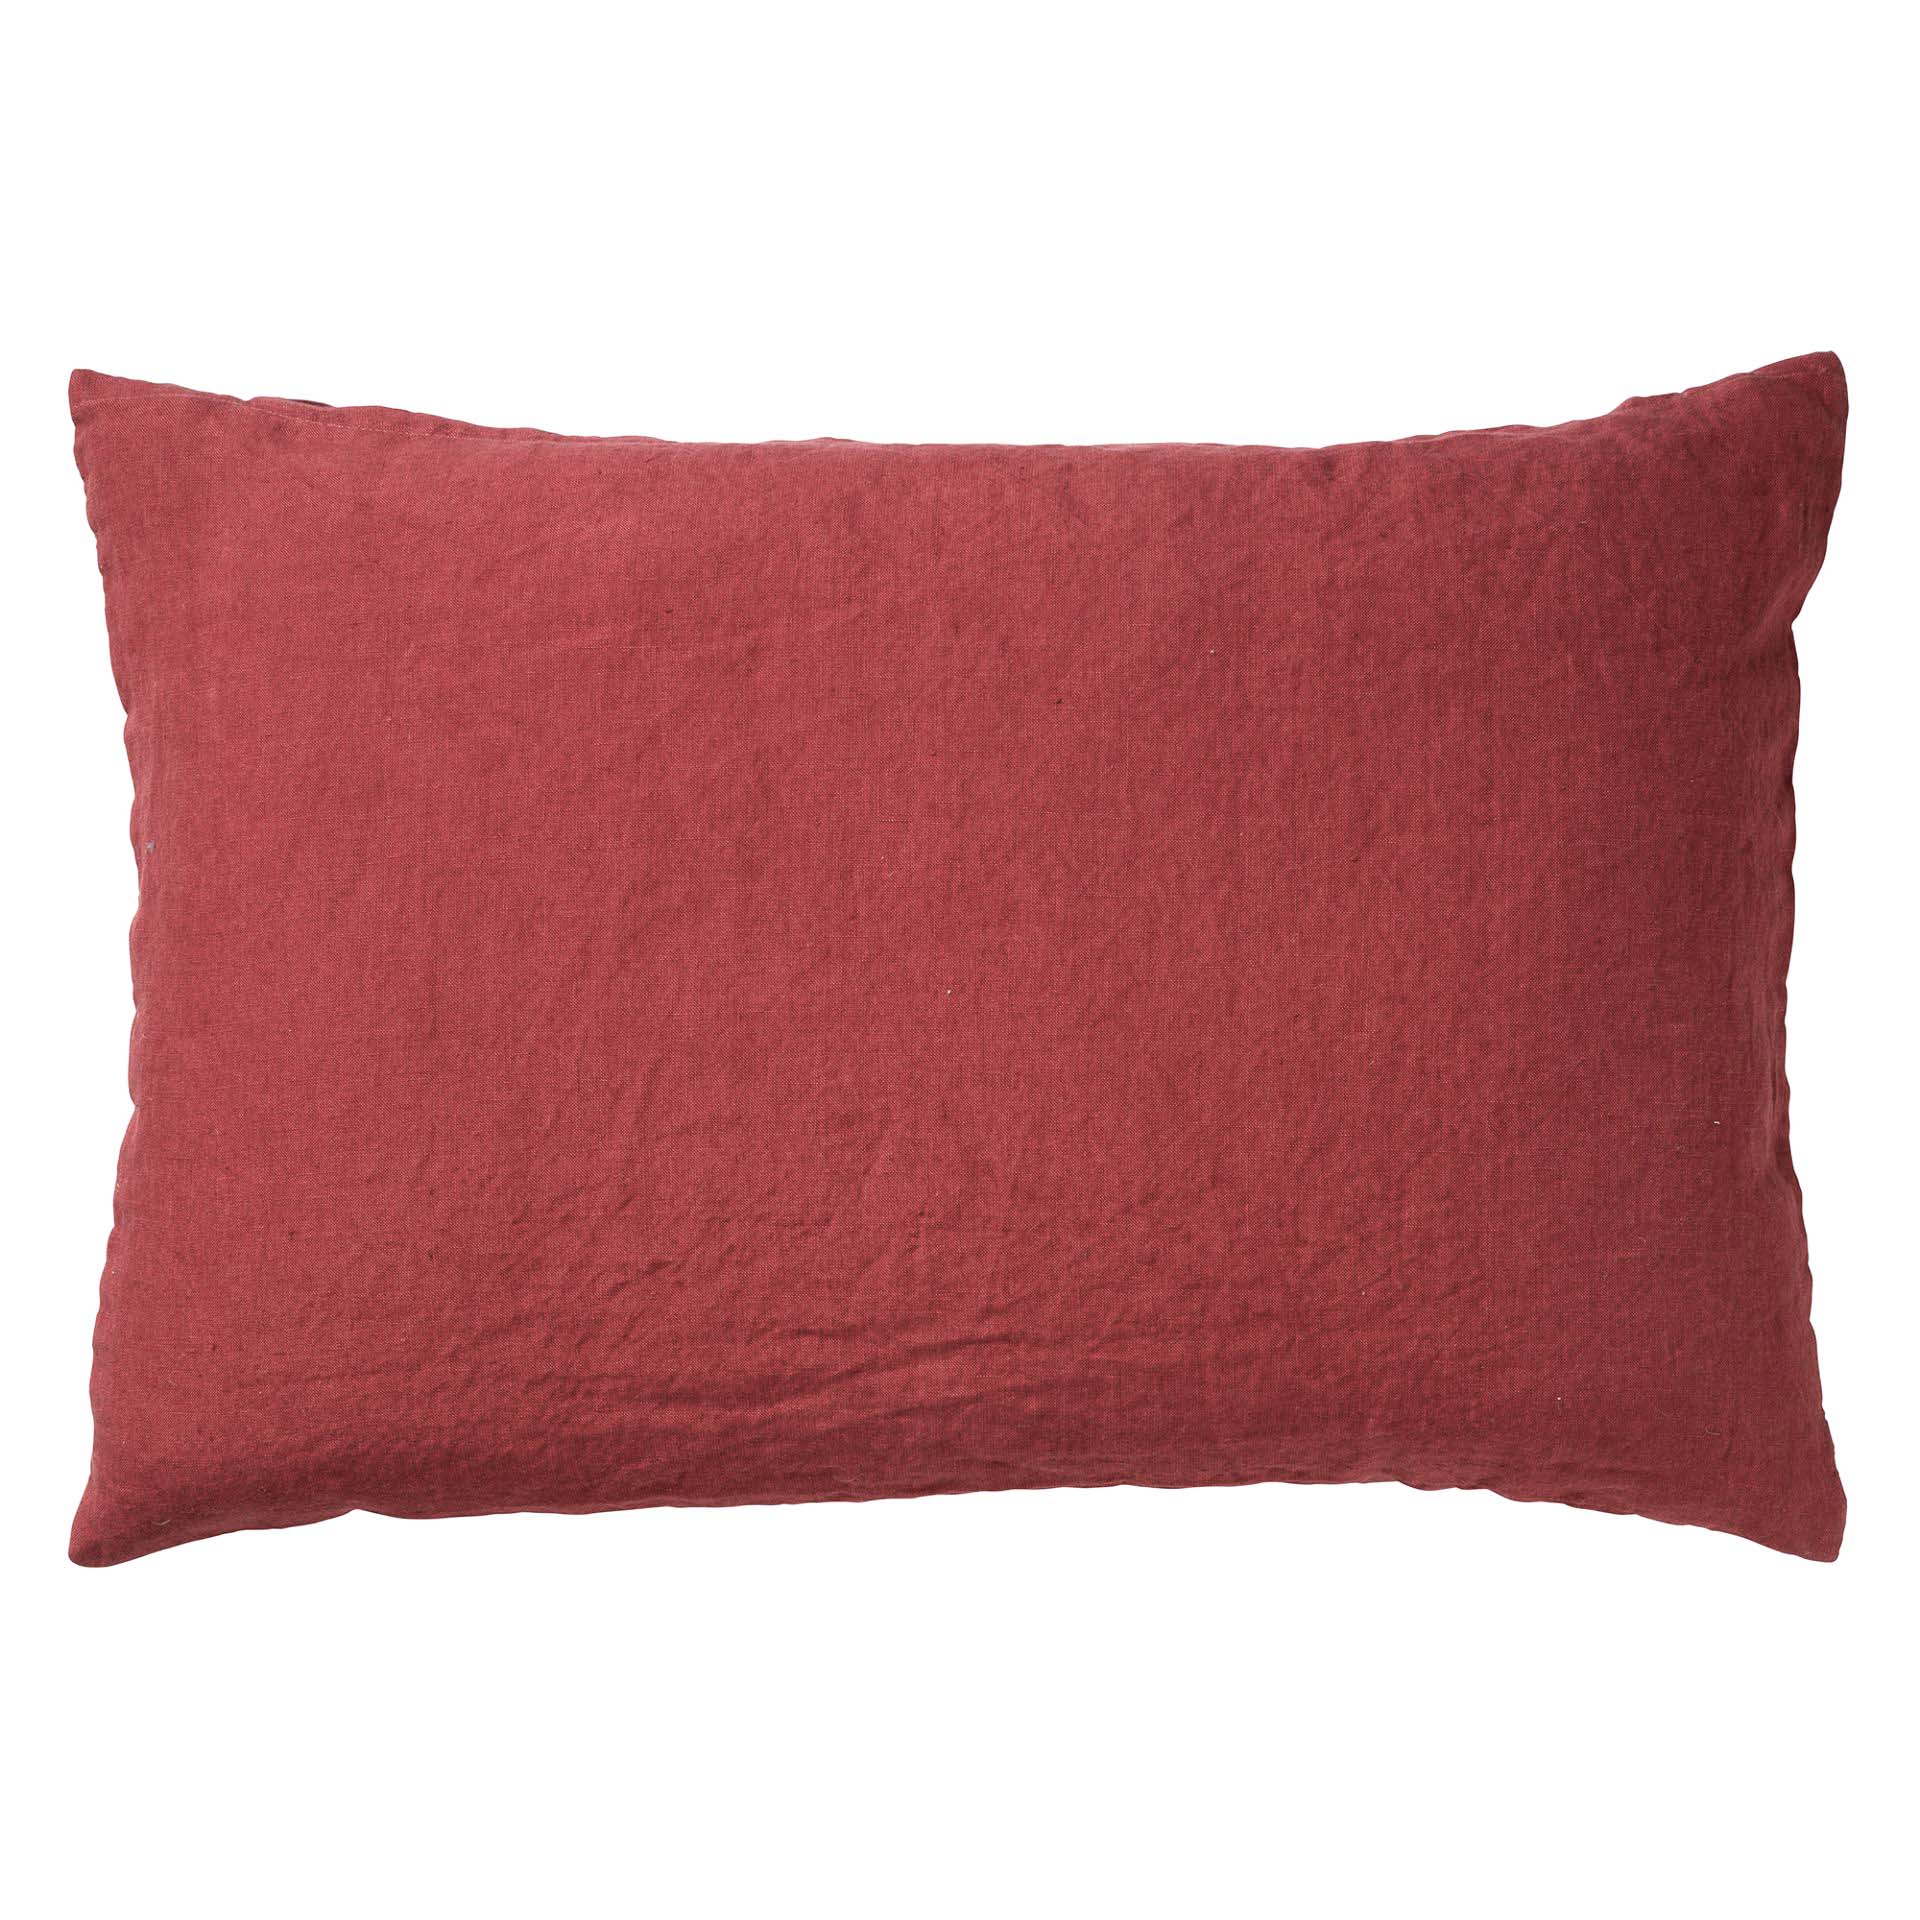 LINN - Cushion 40x60 cm Merlot - red 